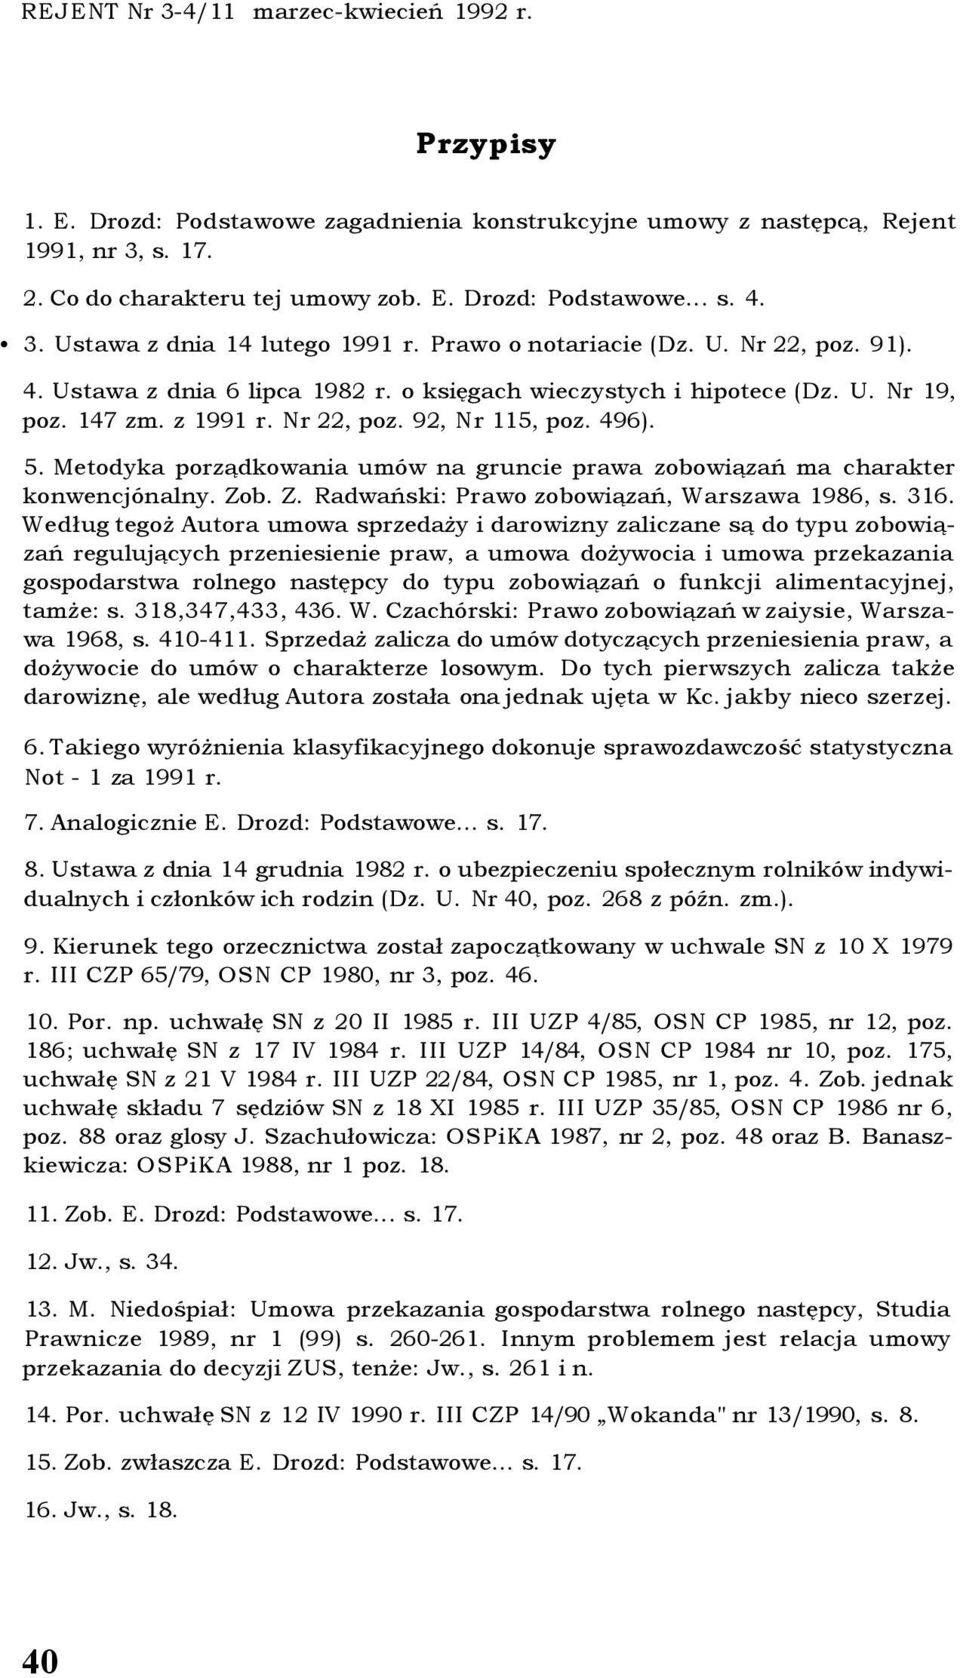 496). 5. Metodyka porządkowania umów na gruncie prawa zobowiązań ma charakter konwencjónalny. Zob. Z. Radwański: Prawo zobowiązań, Warszawa 1986, s. 316.